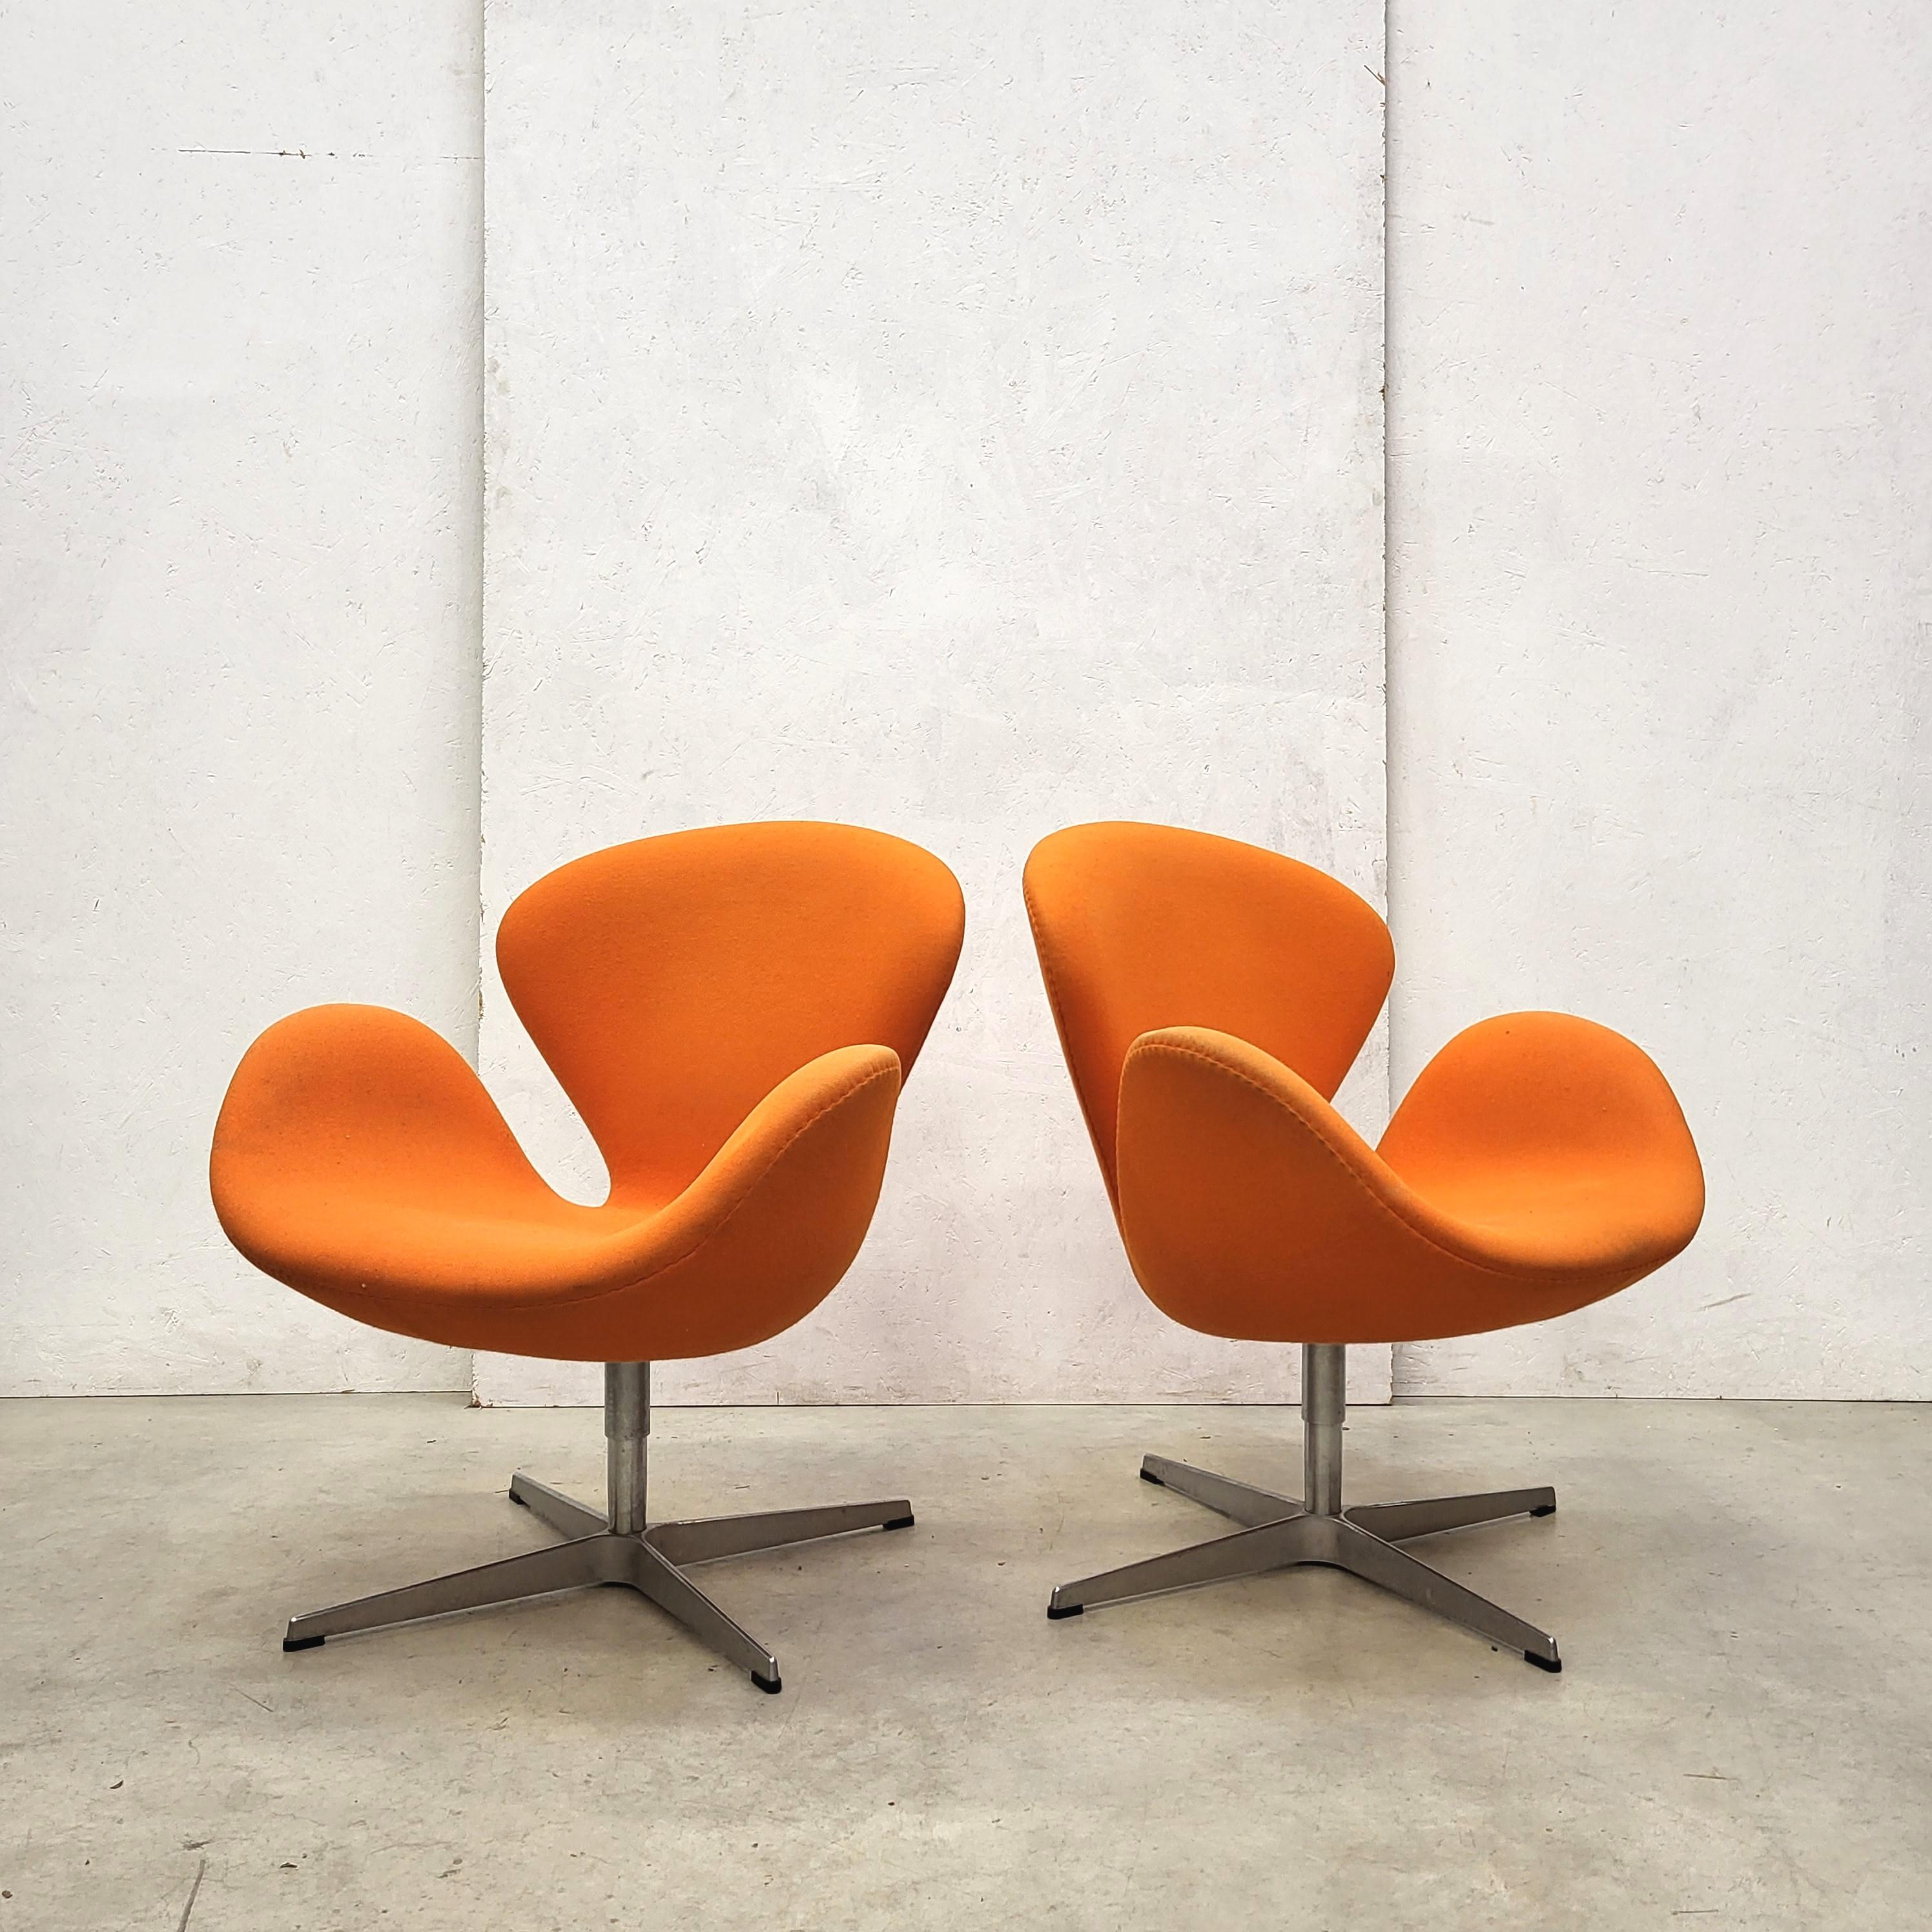 Diese Schwan-Stühle wurden in den 1950er Jahren von Arne Jacobsen für das SAS Hotel in Kopenhagen entworfen und 2006 von Fritz Hansen hergestellt. 

Der Stuhl ist mit einem wunderschönen orangefarbenen Stoff bezogen. 
Die Stücke sind mit dem